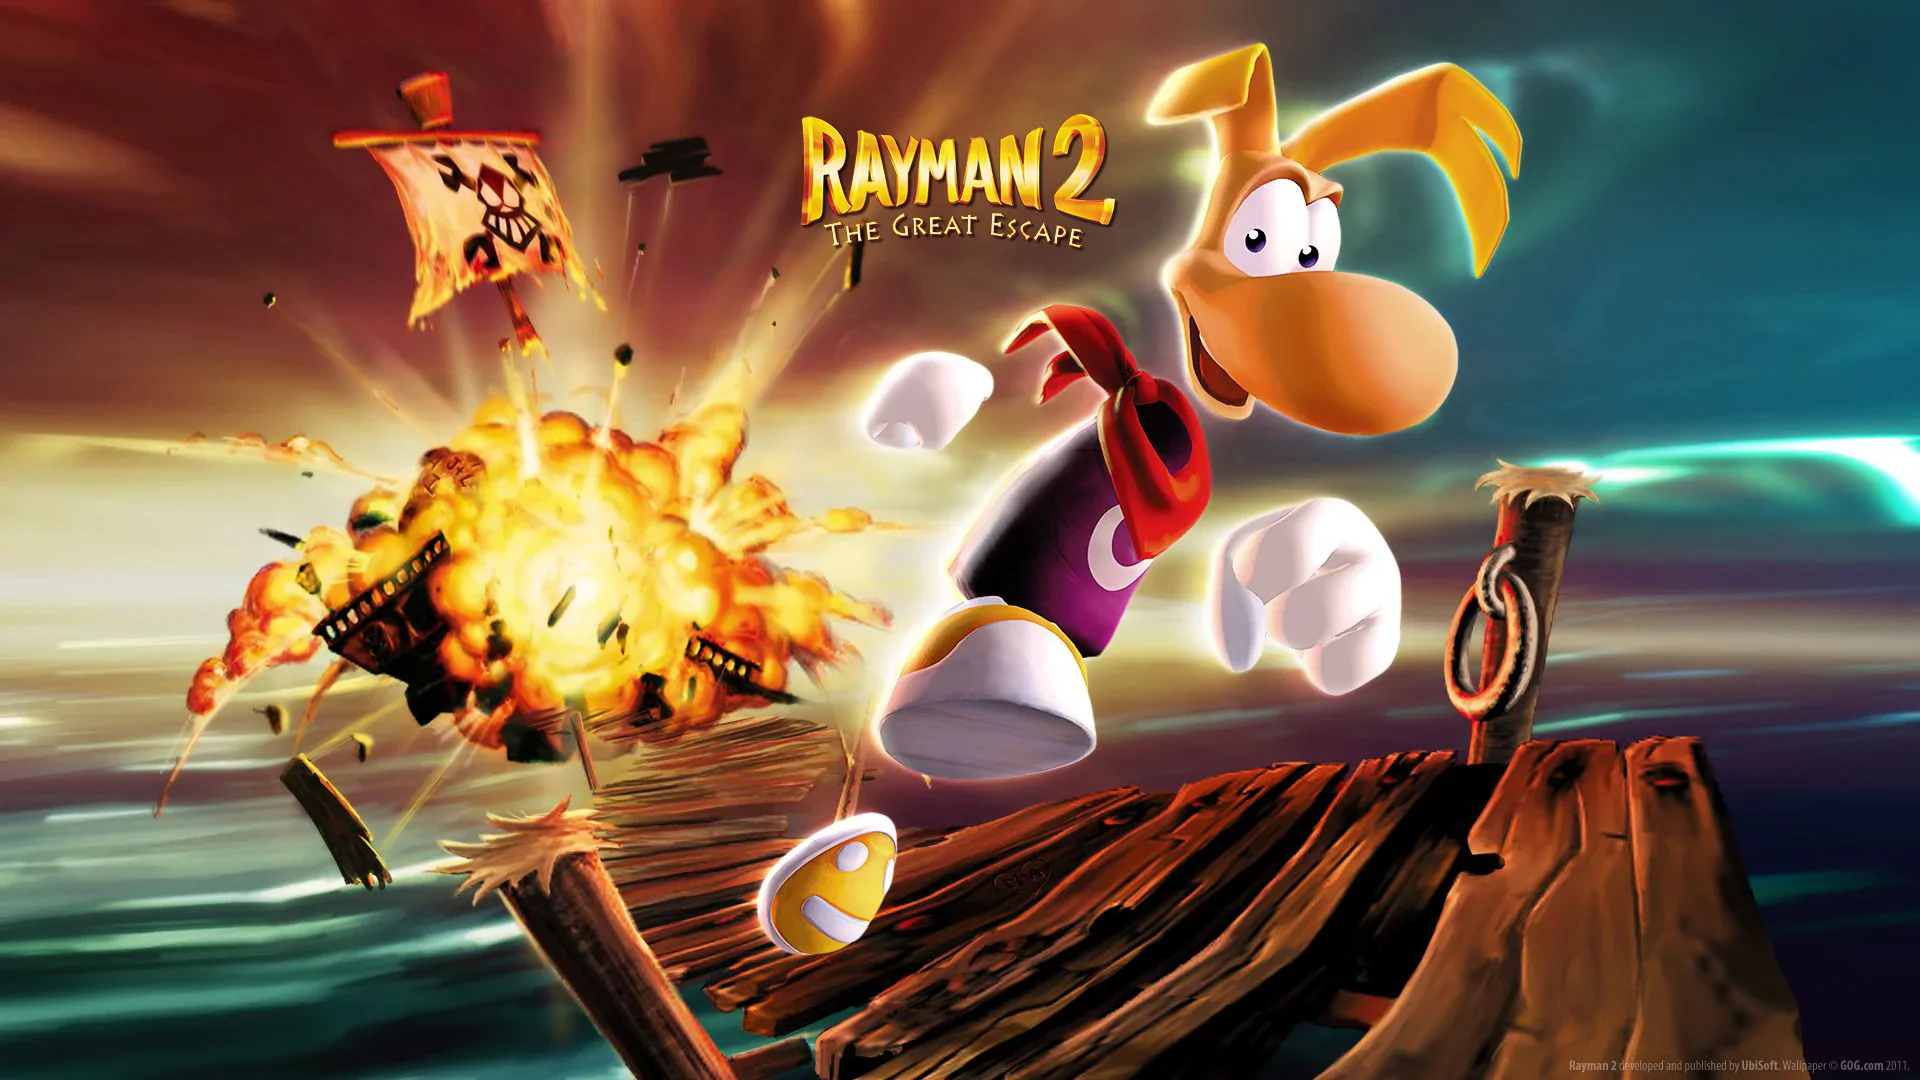 Zagrajmy w to jeszcze raz - Rayman 2: The Great Escape. Czy gra zestarzała się godnie?